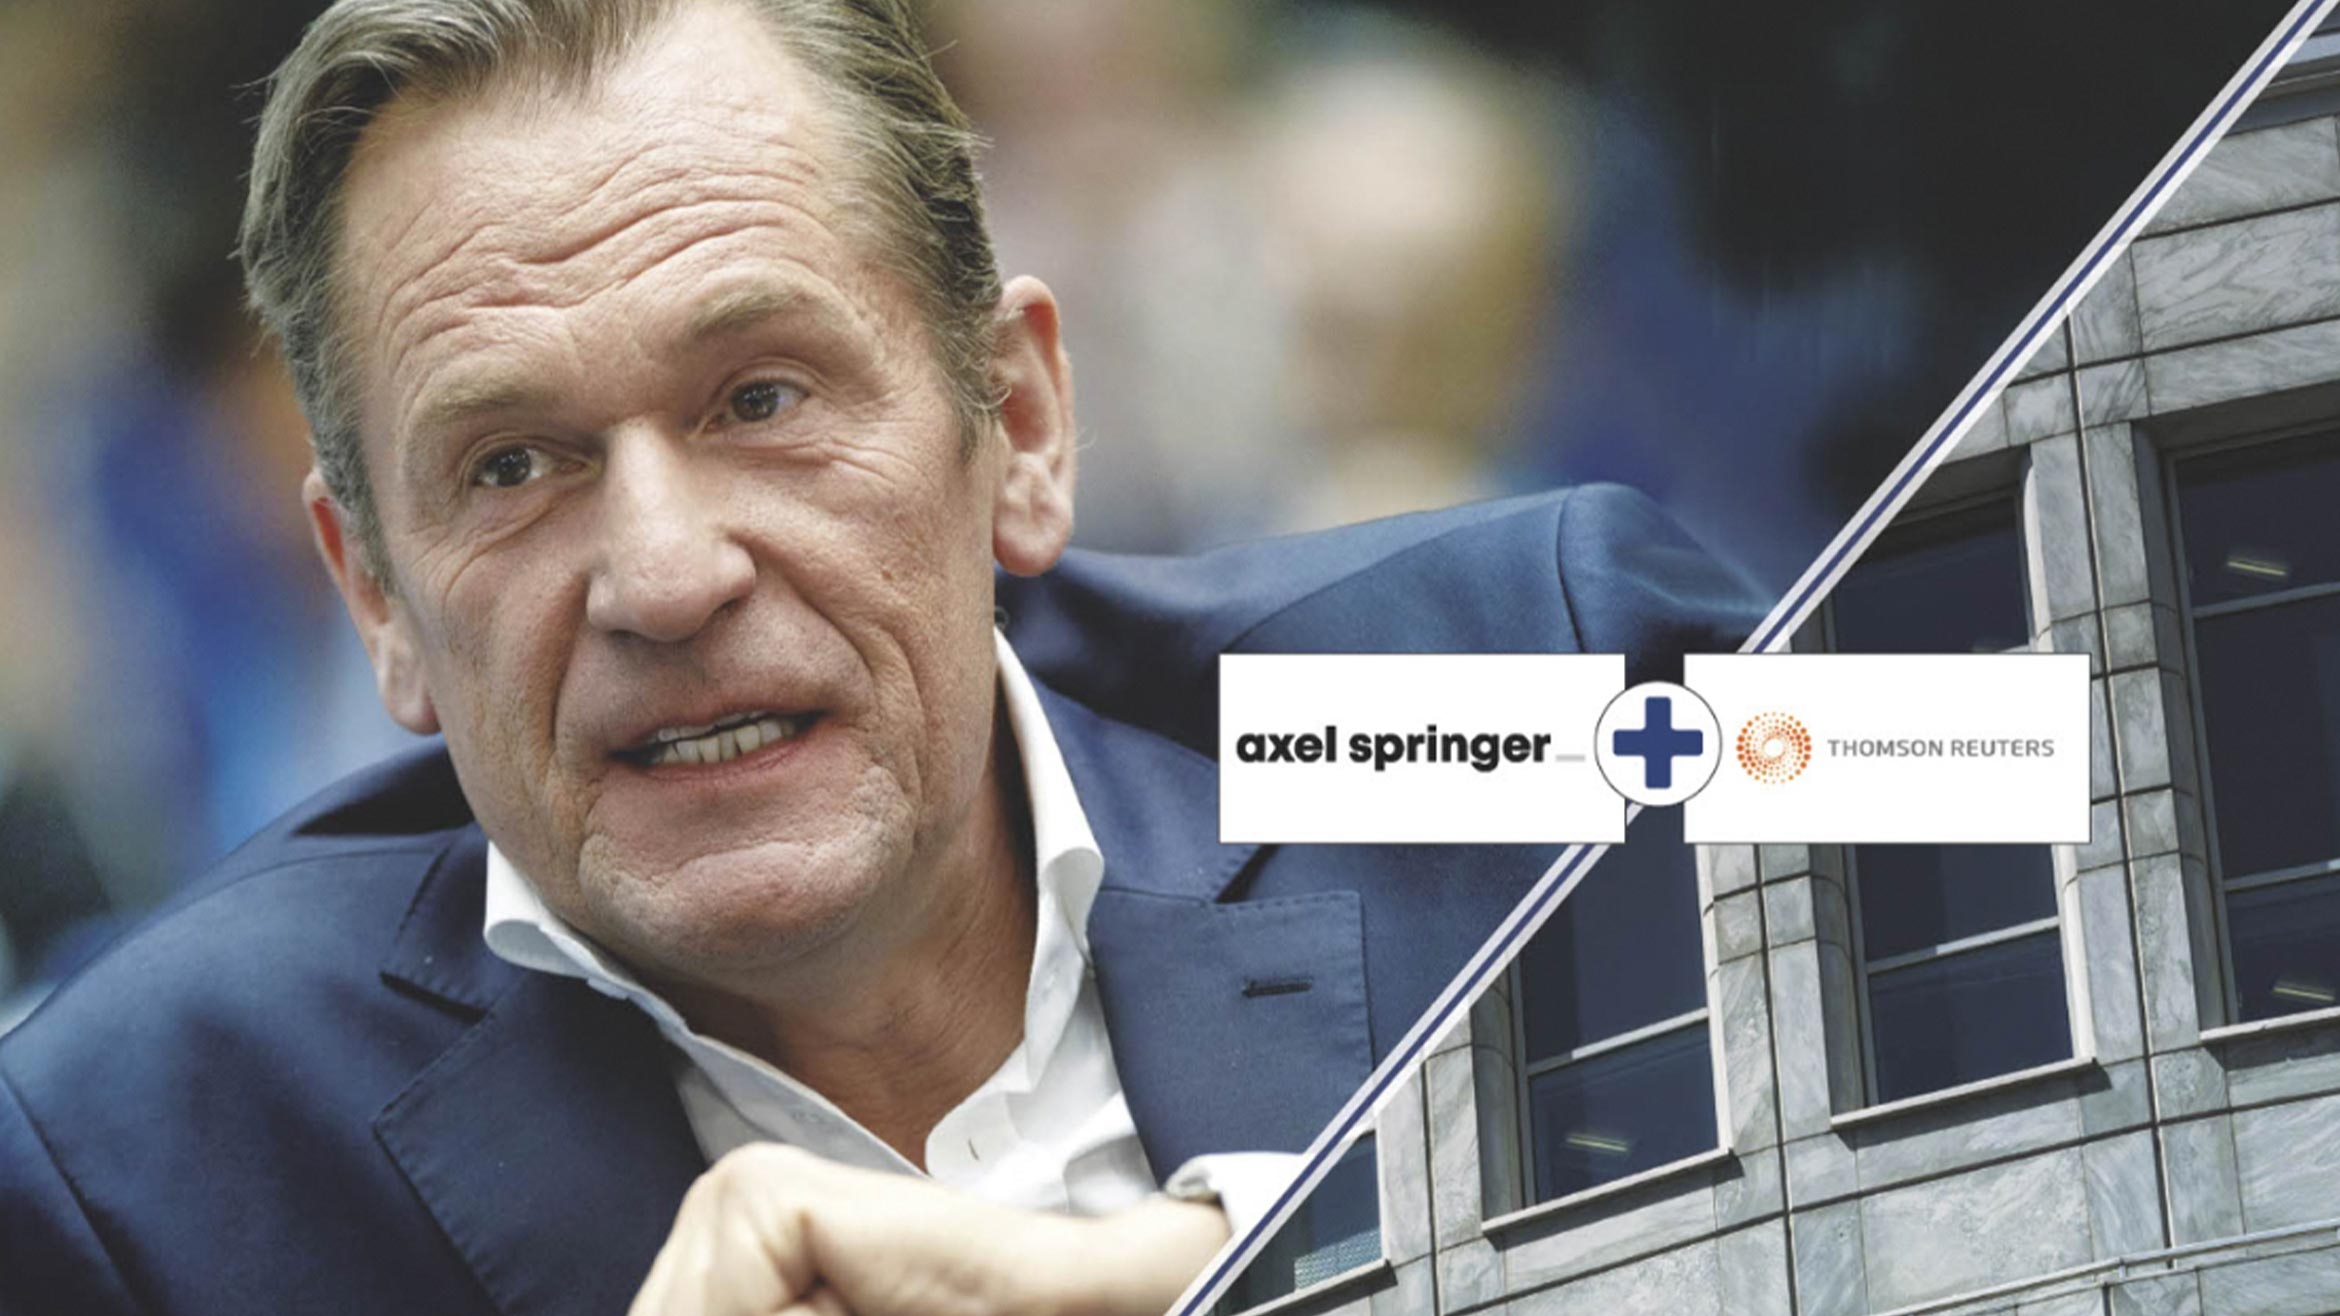 Springer-Chef Mathias Döpfner ist in Kauflaune. Branchenspekulationen zufolge soll er ein Auge auf die Nachrichtenagentur Thomson Reuters geworfen haben –